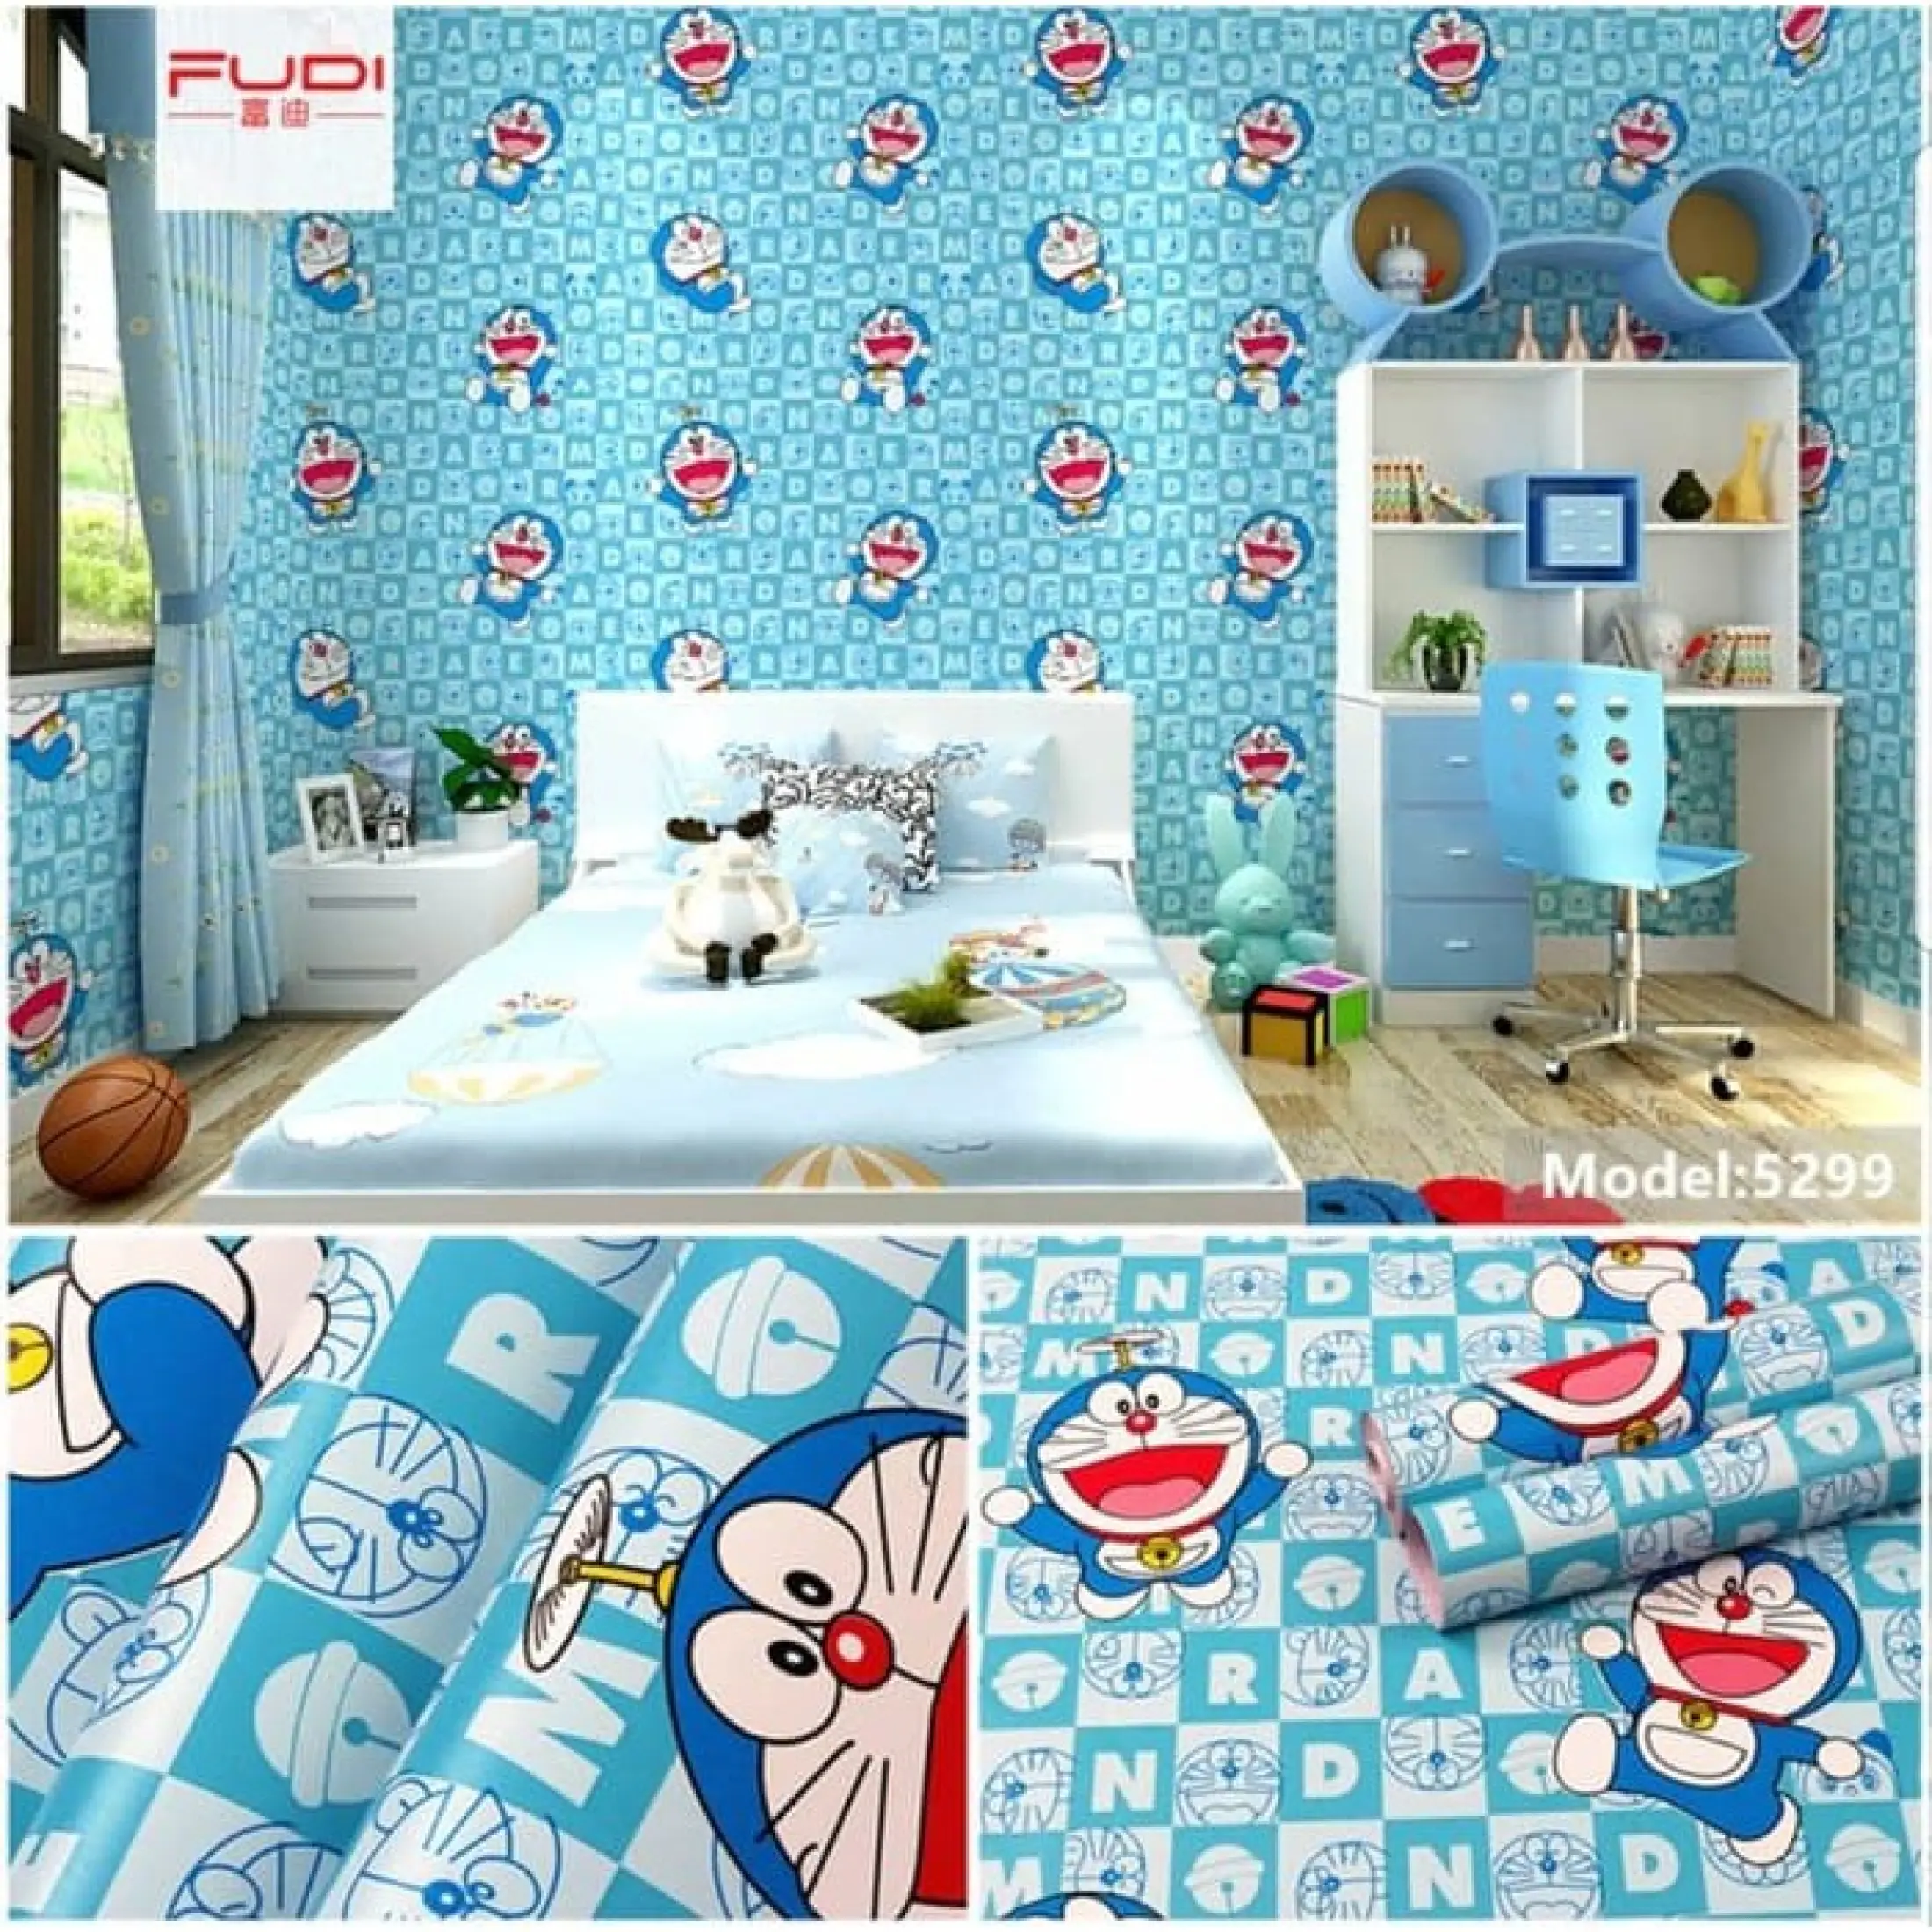 Wallpaper Sticker Dinding Kamar Dekorasi Rumah Ruang Tamu Dapur Kamar Tidur 3d Wpsdorasquare Doraemon Murah Lazada Indonesia